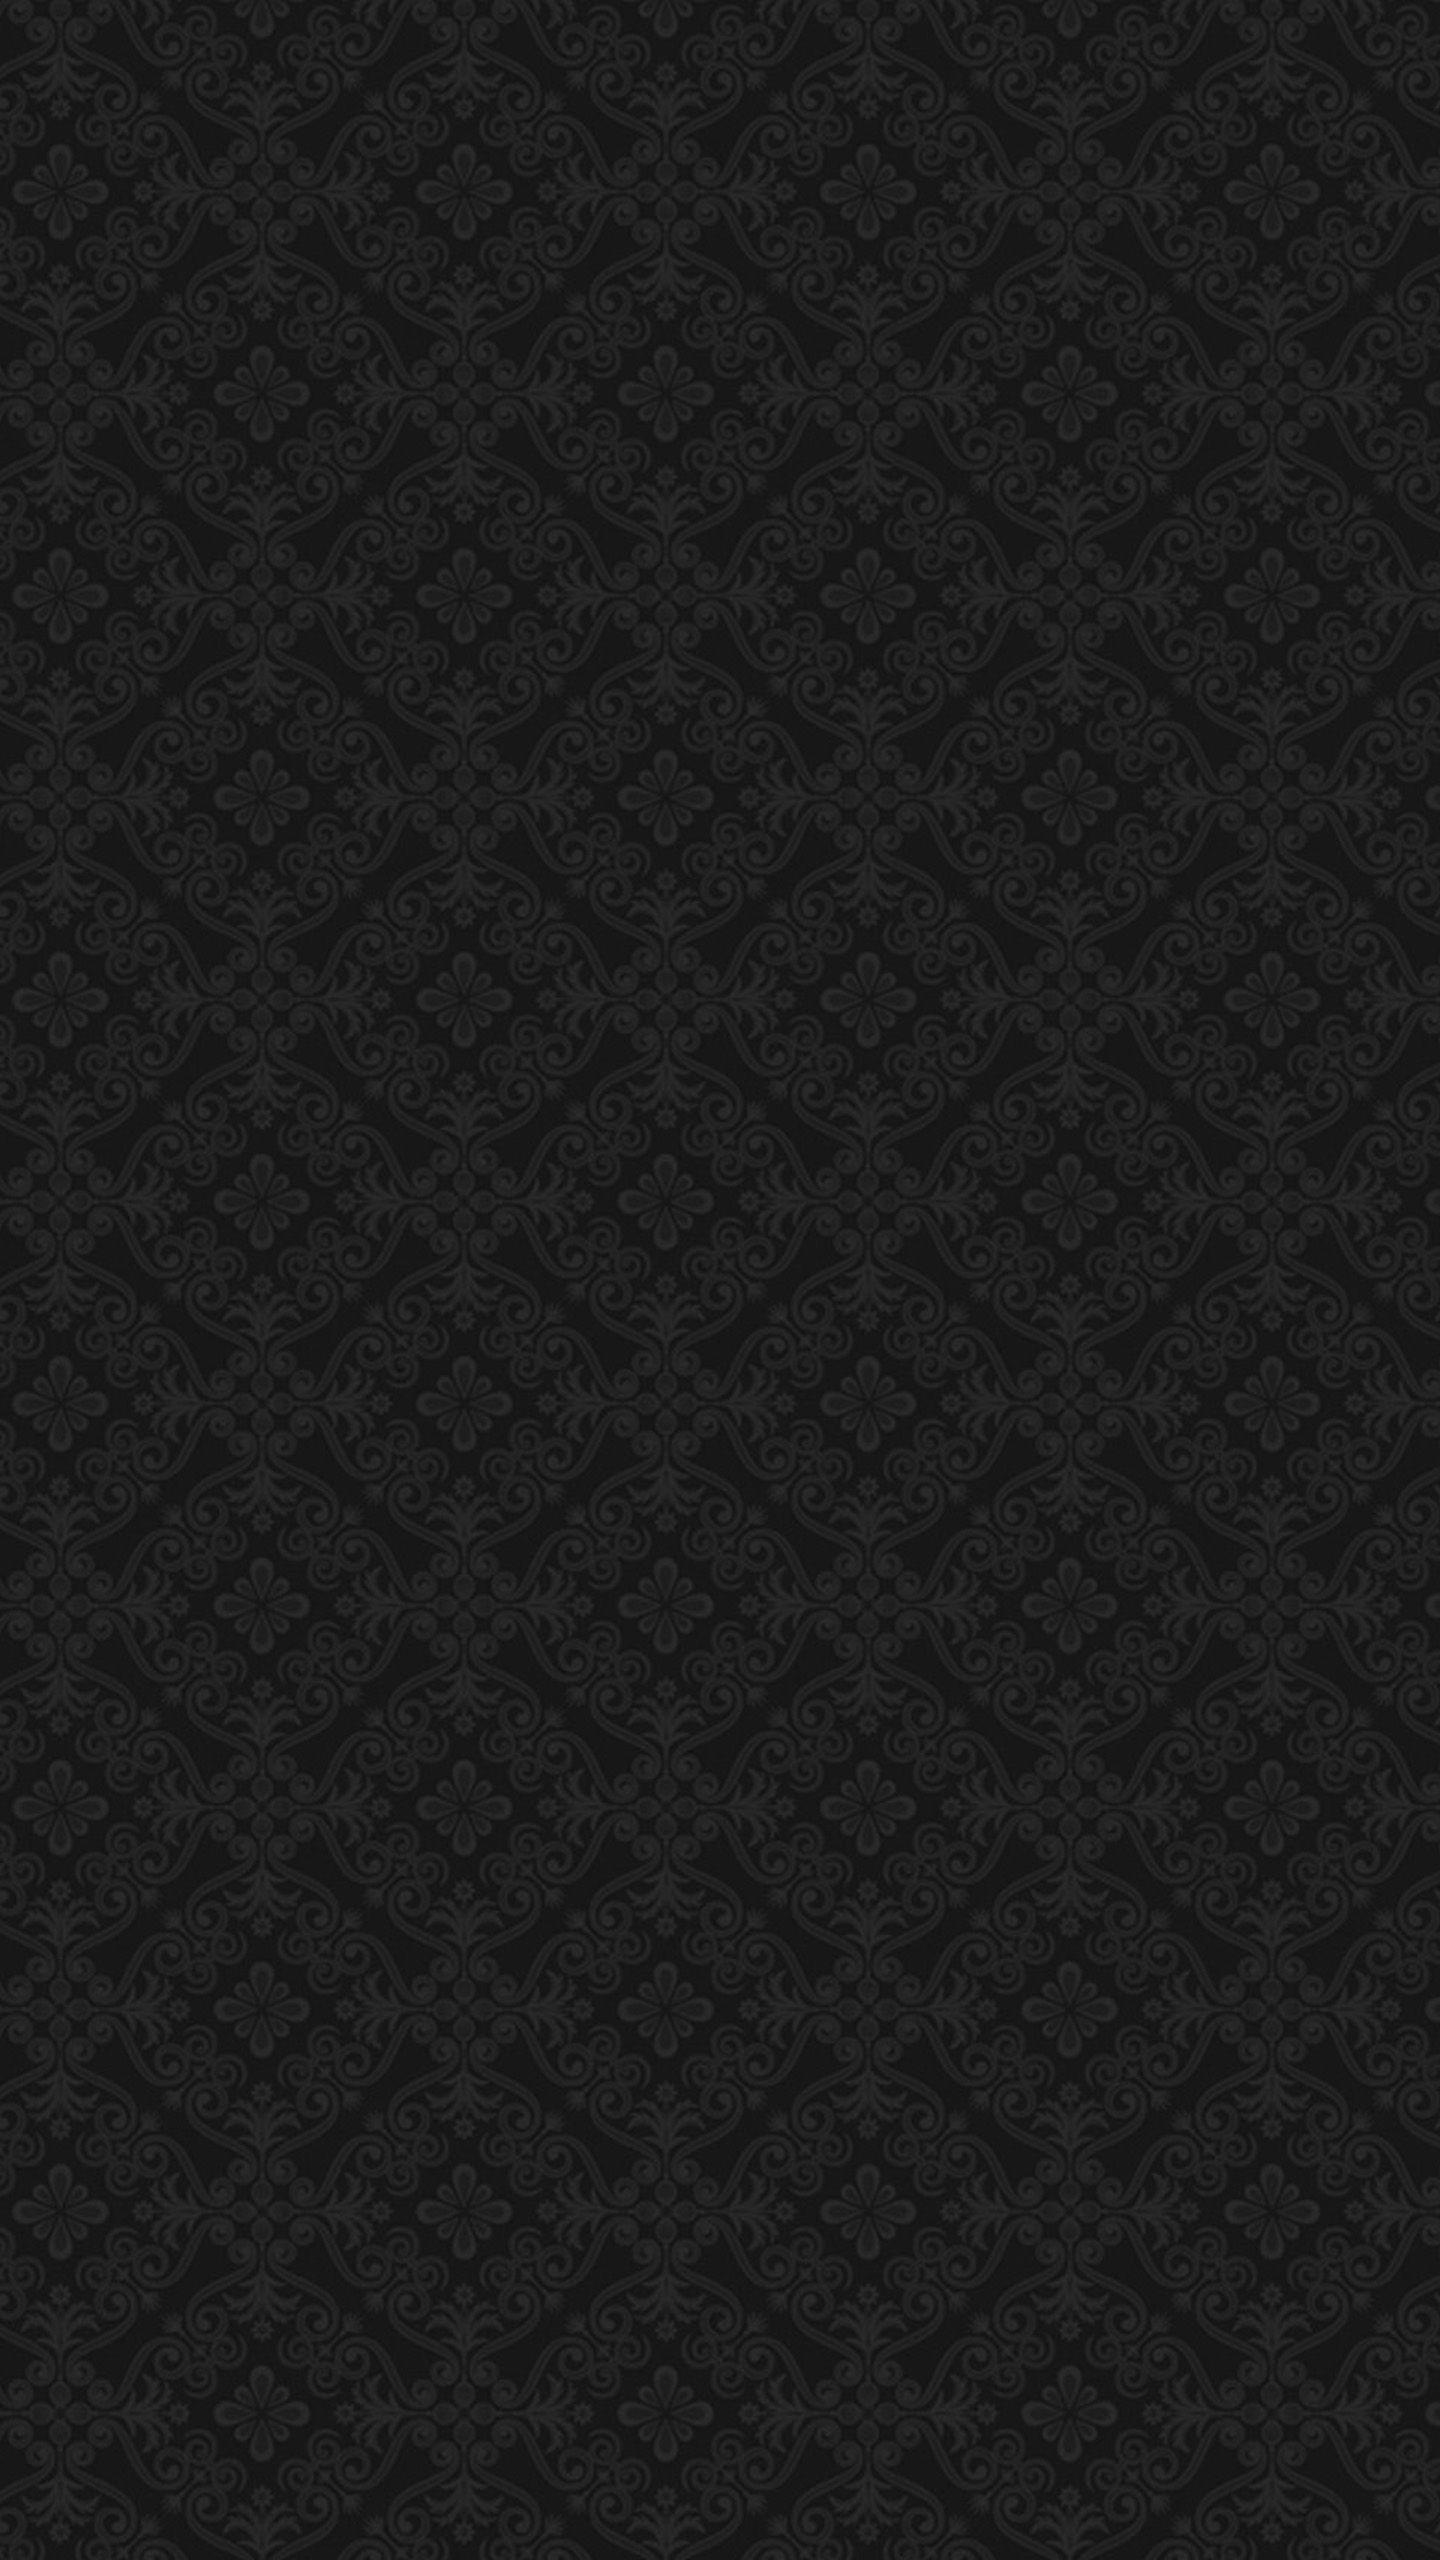 Black baroque Nexus 6 Wallpaper, Nexus 6 wallpaper and Background